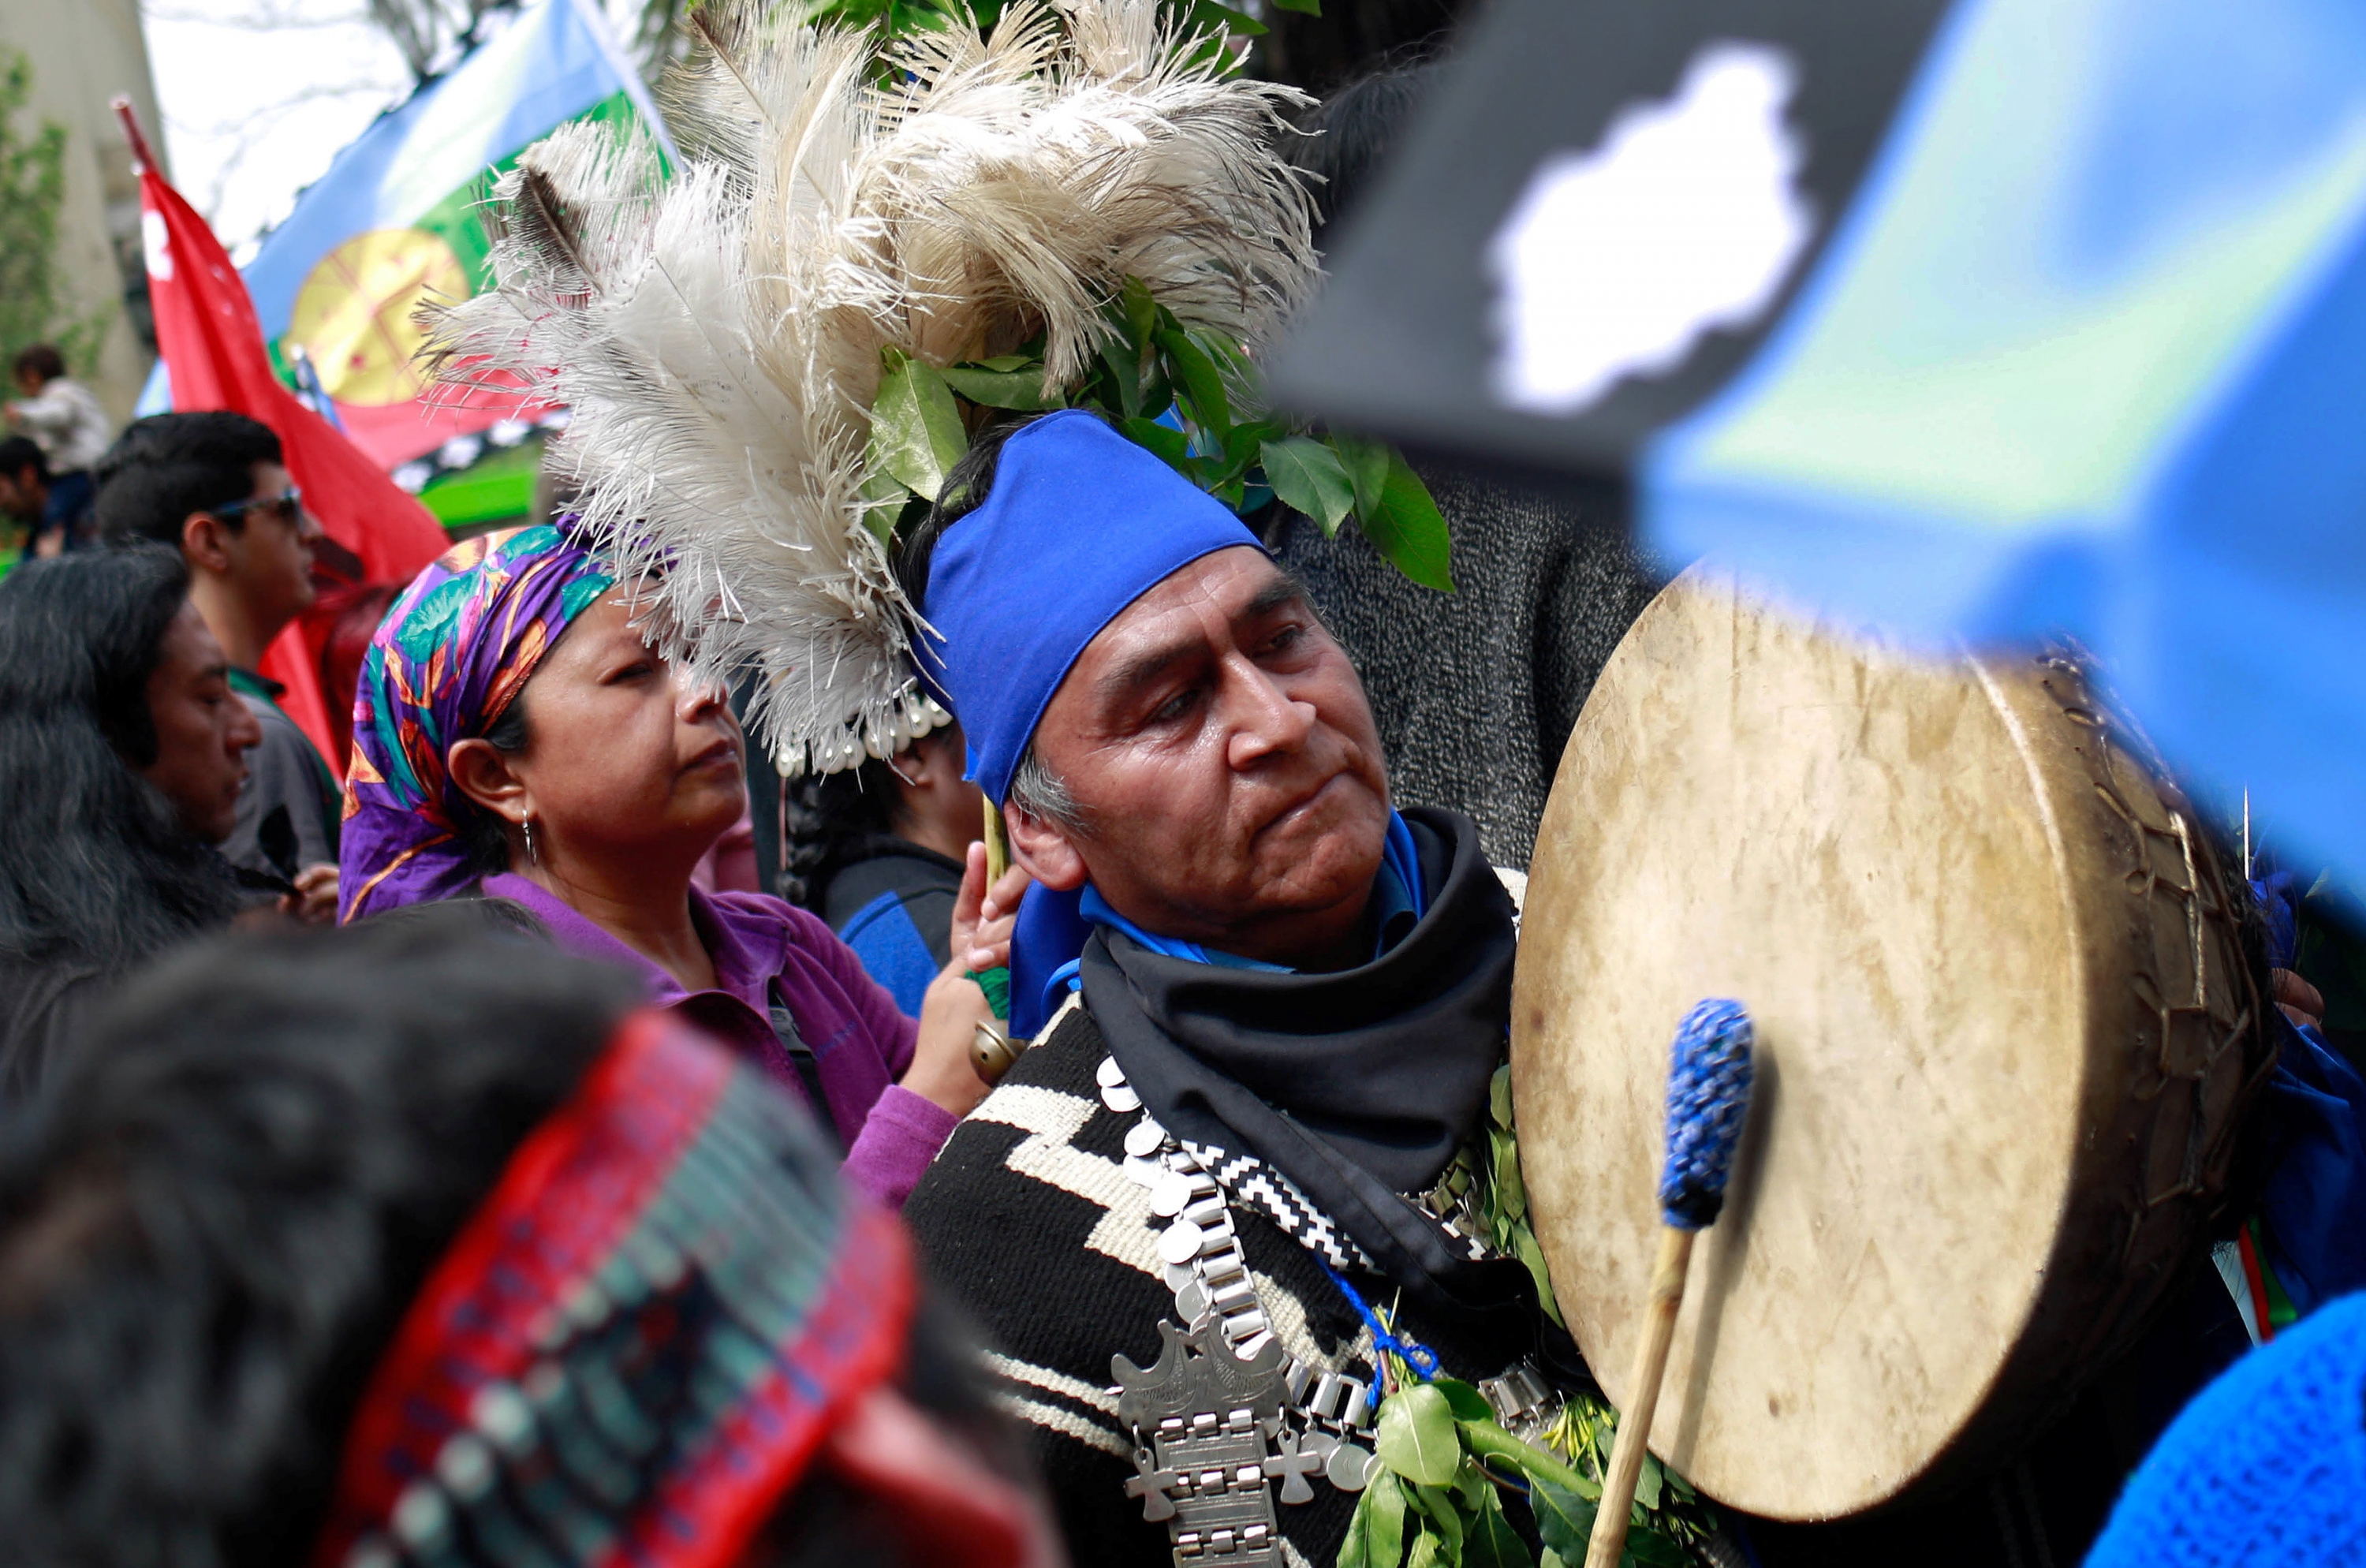 El 12 de octubre, Latinoamérica se viste de indígena (con orgullo) | Público